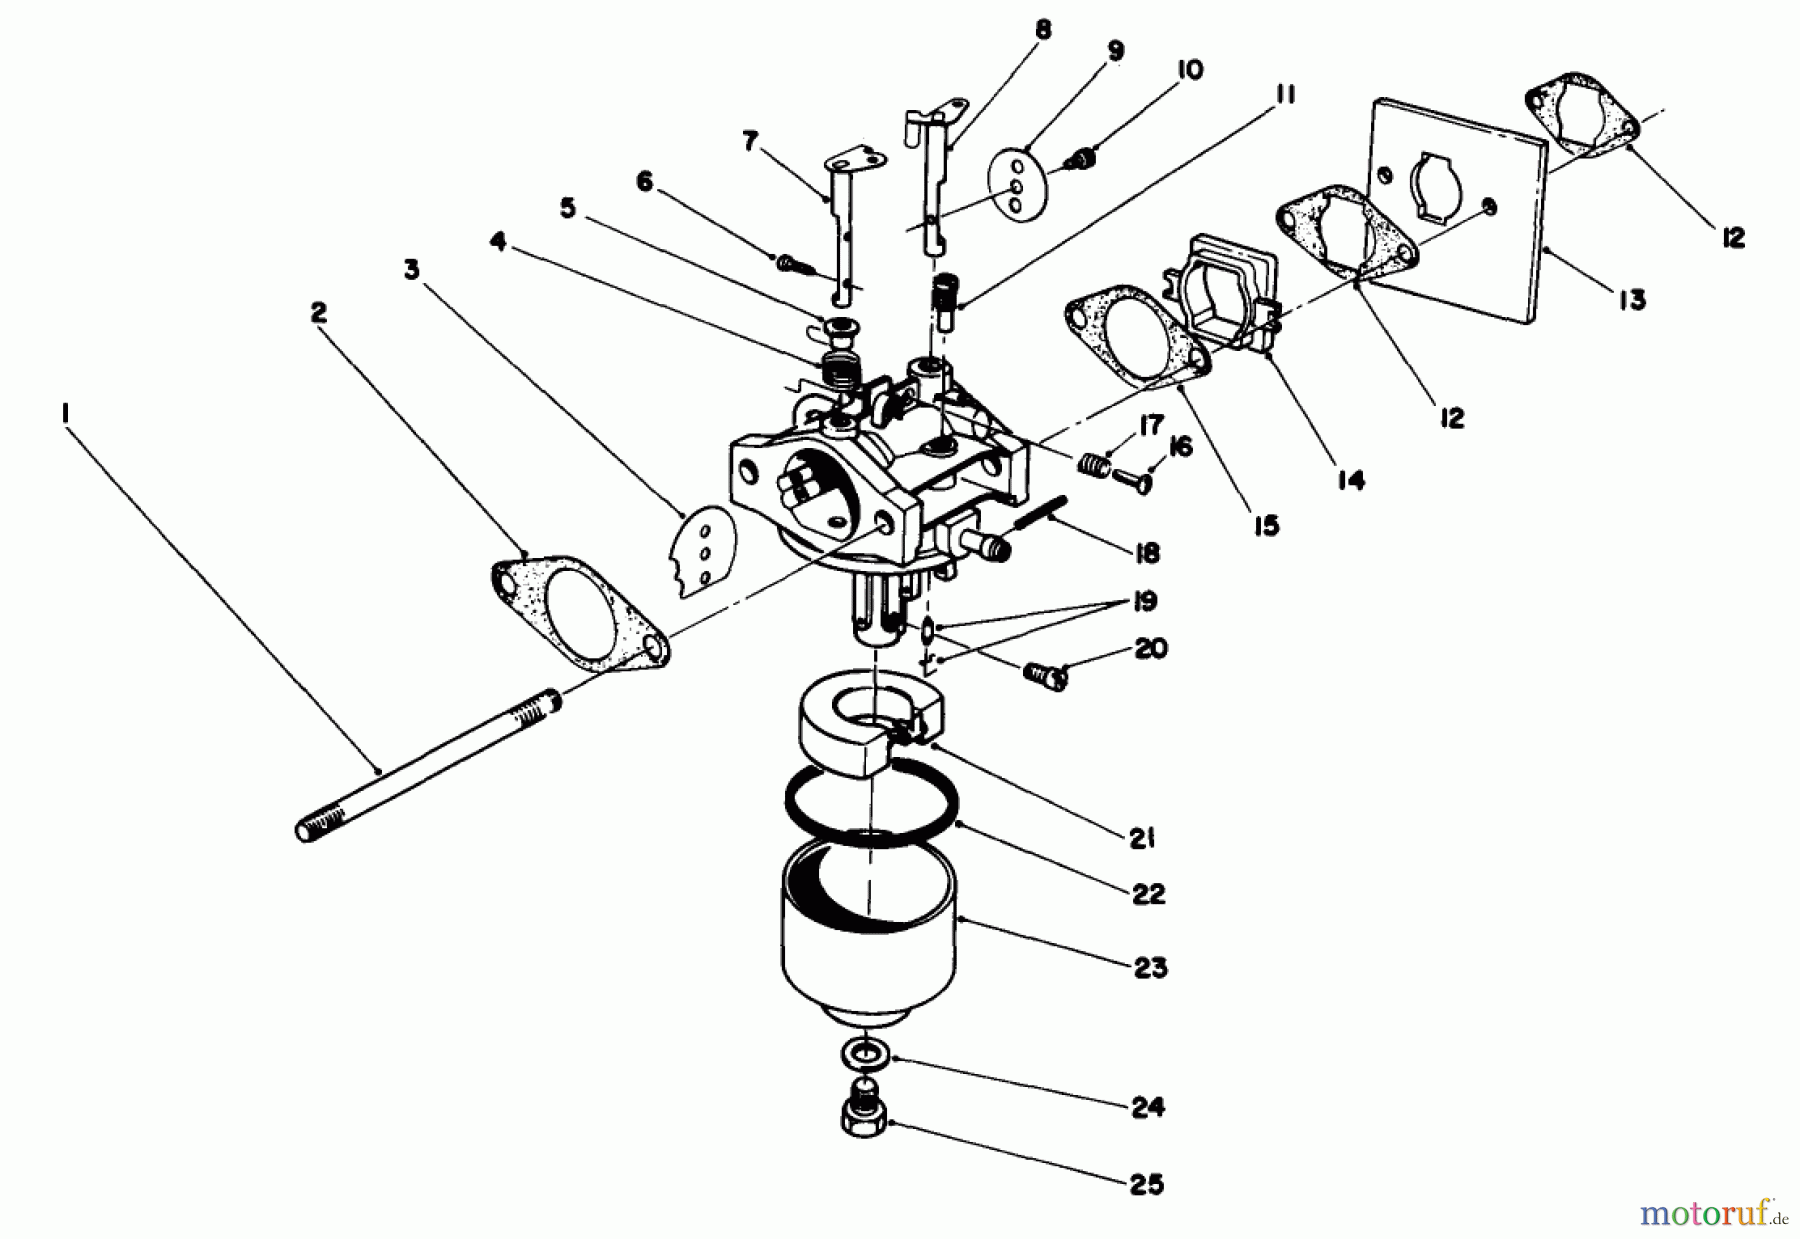  Toro Neu Mowers, Walk-Behind Seite 2 22030 - Toro Lawnmower, 1989 (9000001-9999999) ENGINE ASSEMBLY MODEL NO. 47PH7 #3